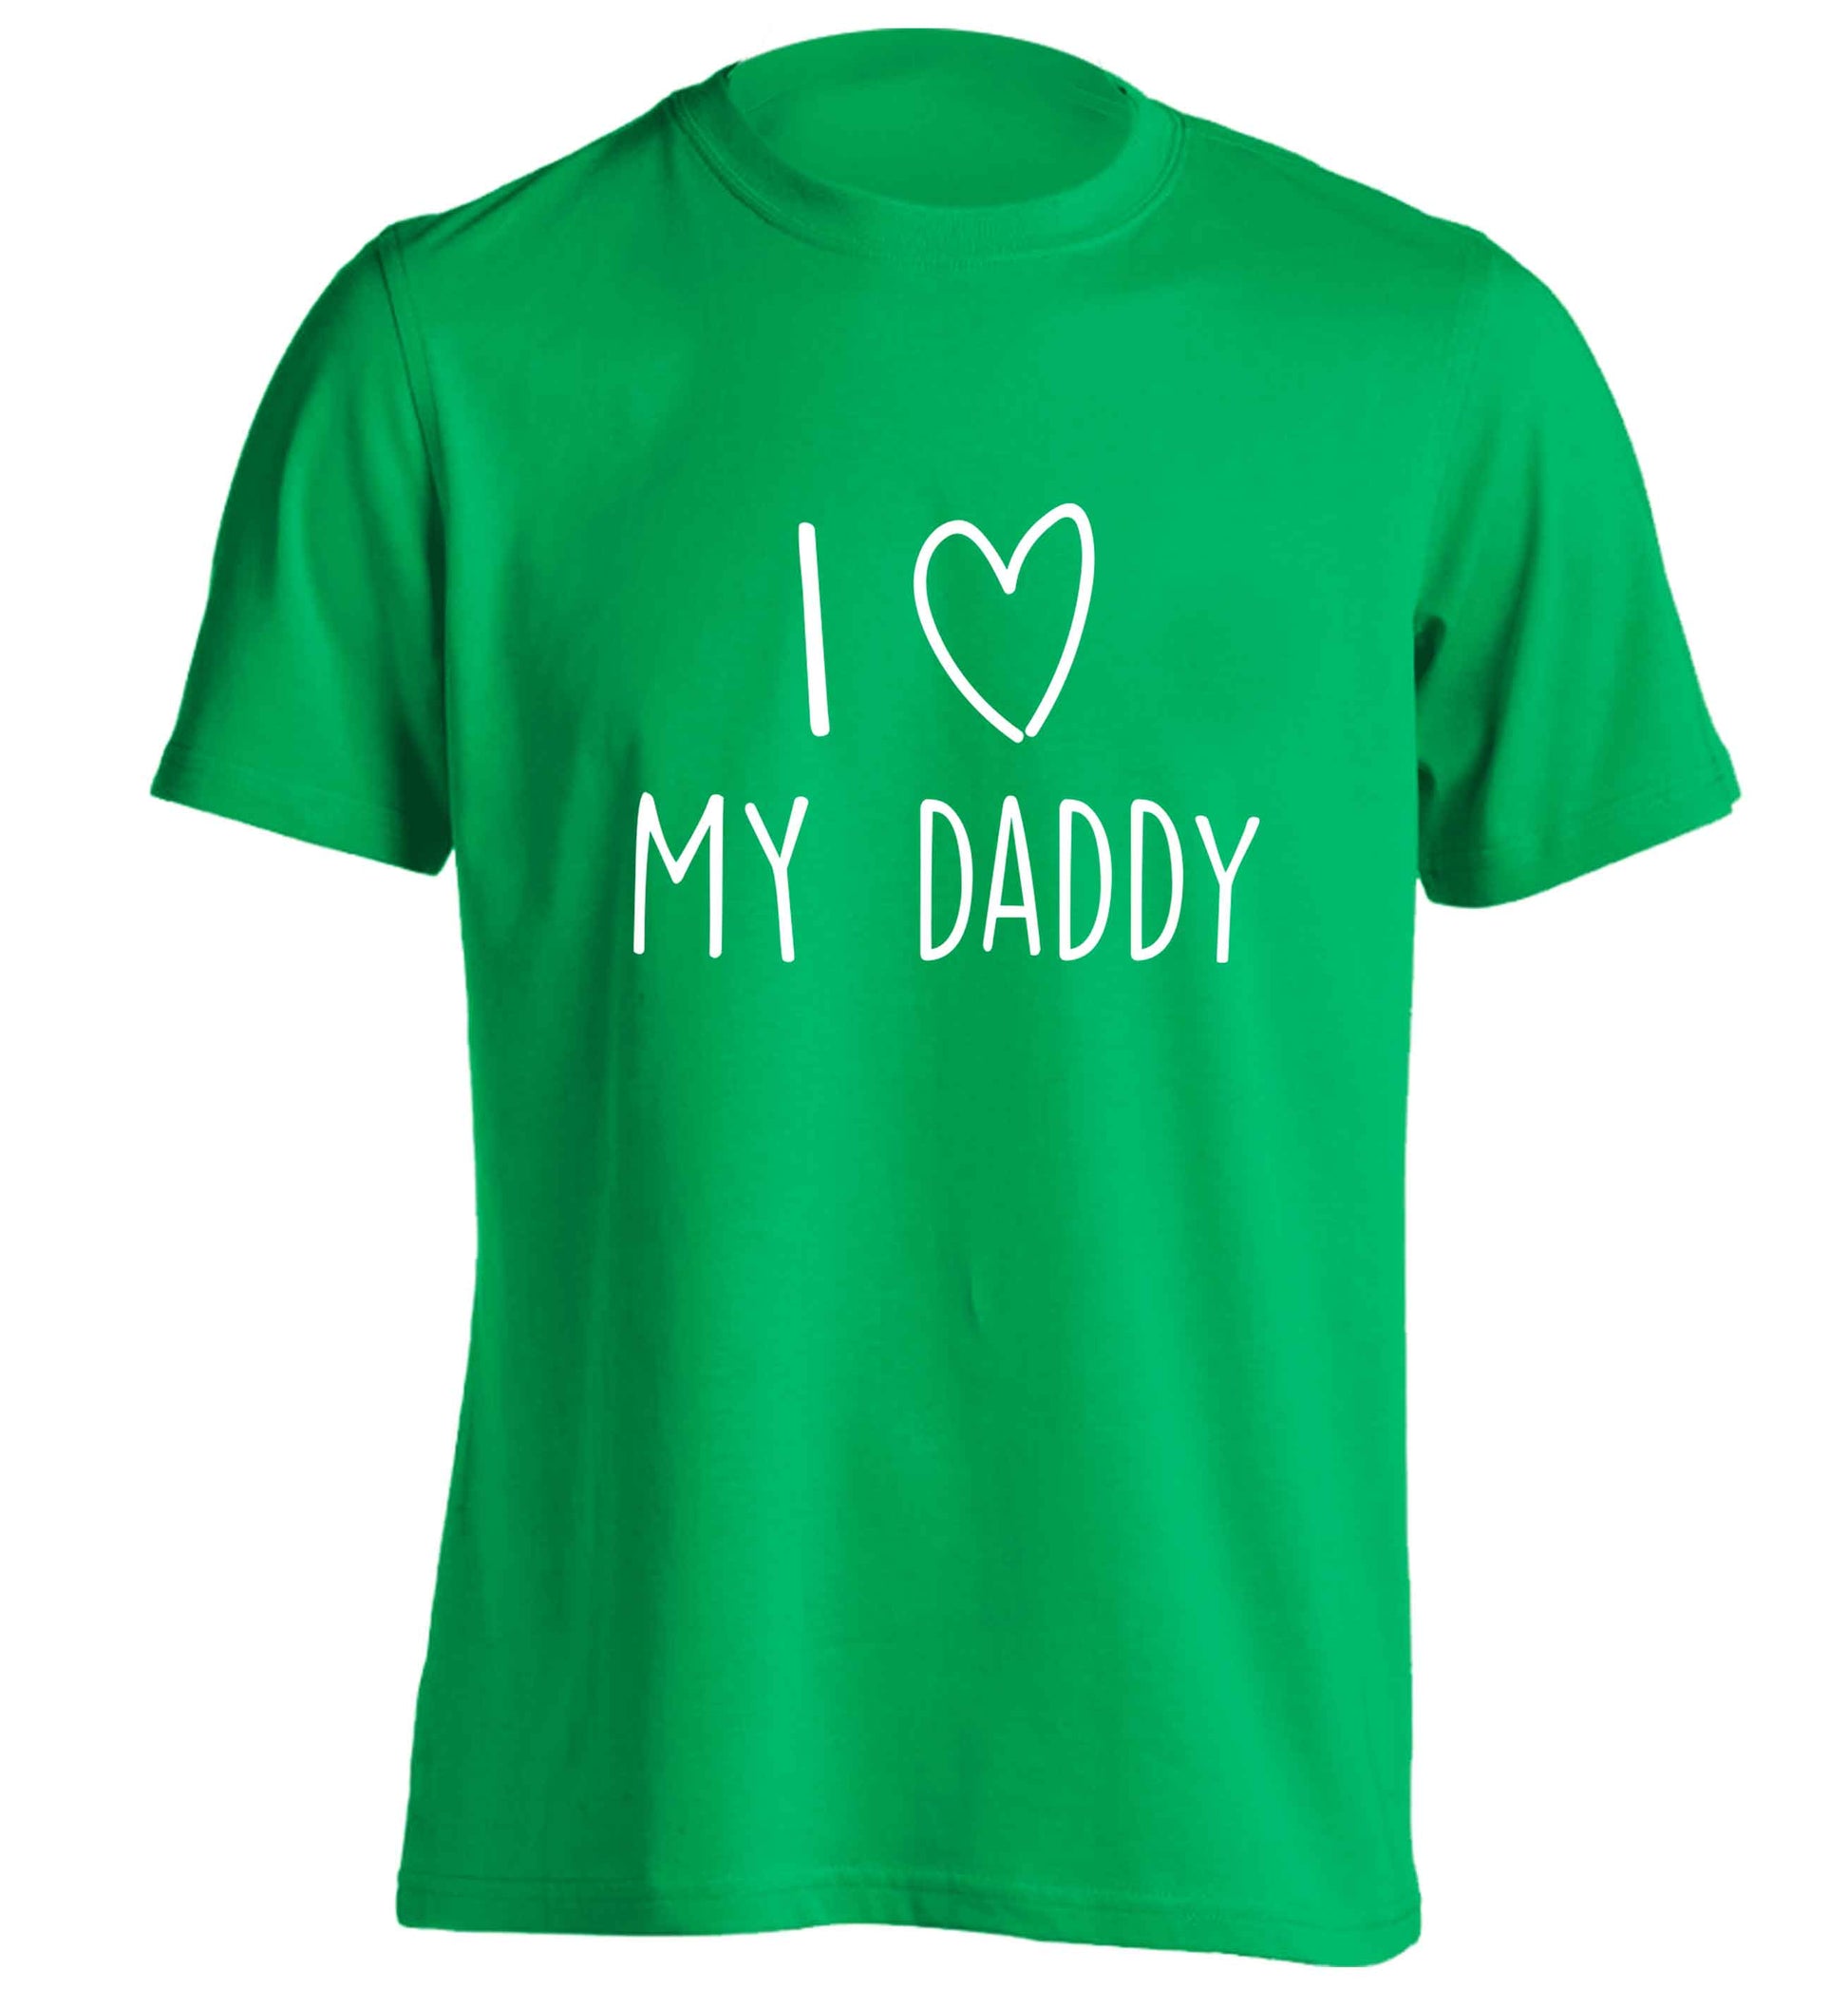 I love my daddy adults unisex green Tshirt 2XL